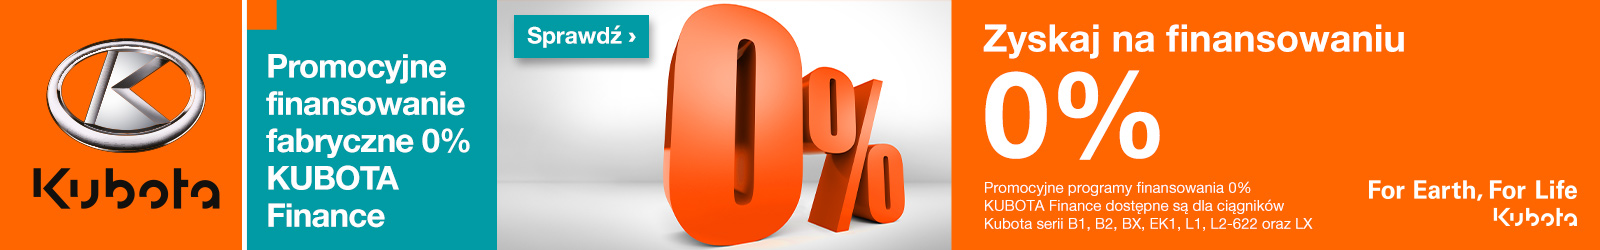 Promocyjne finansowanie fabryczne 0% KUBOTA Finance